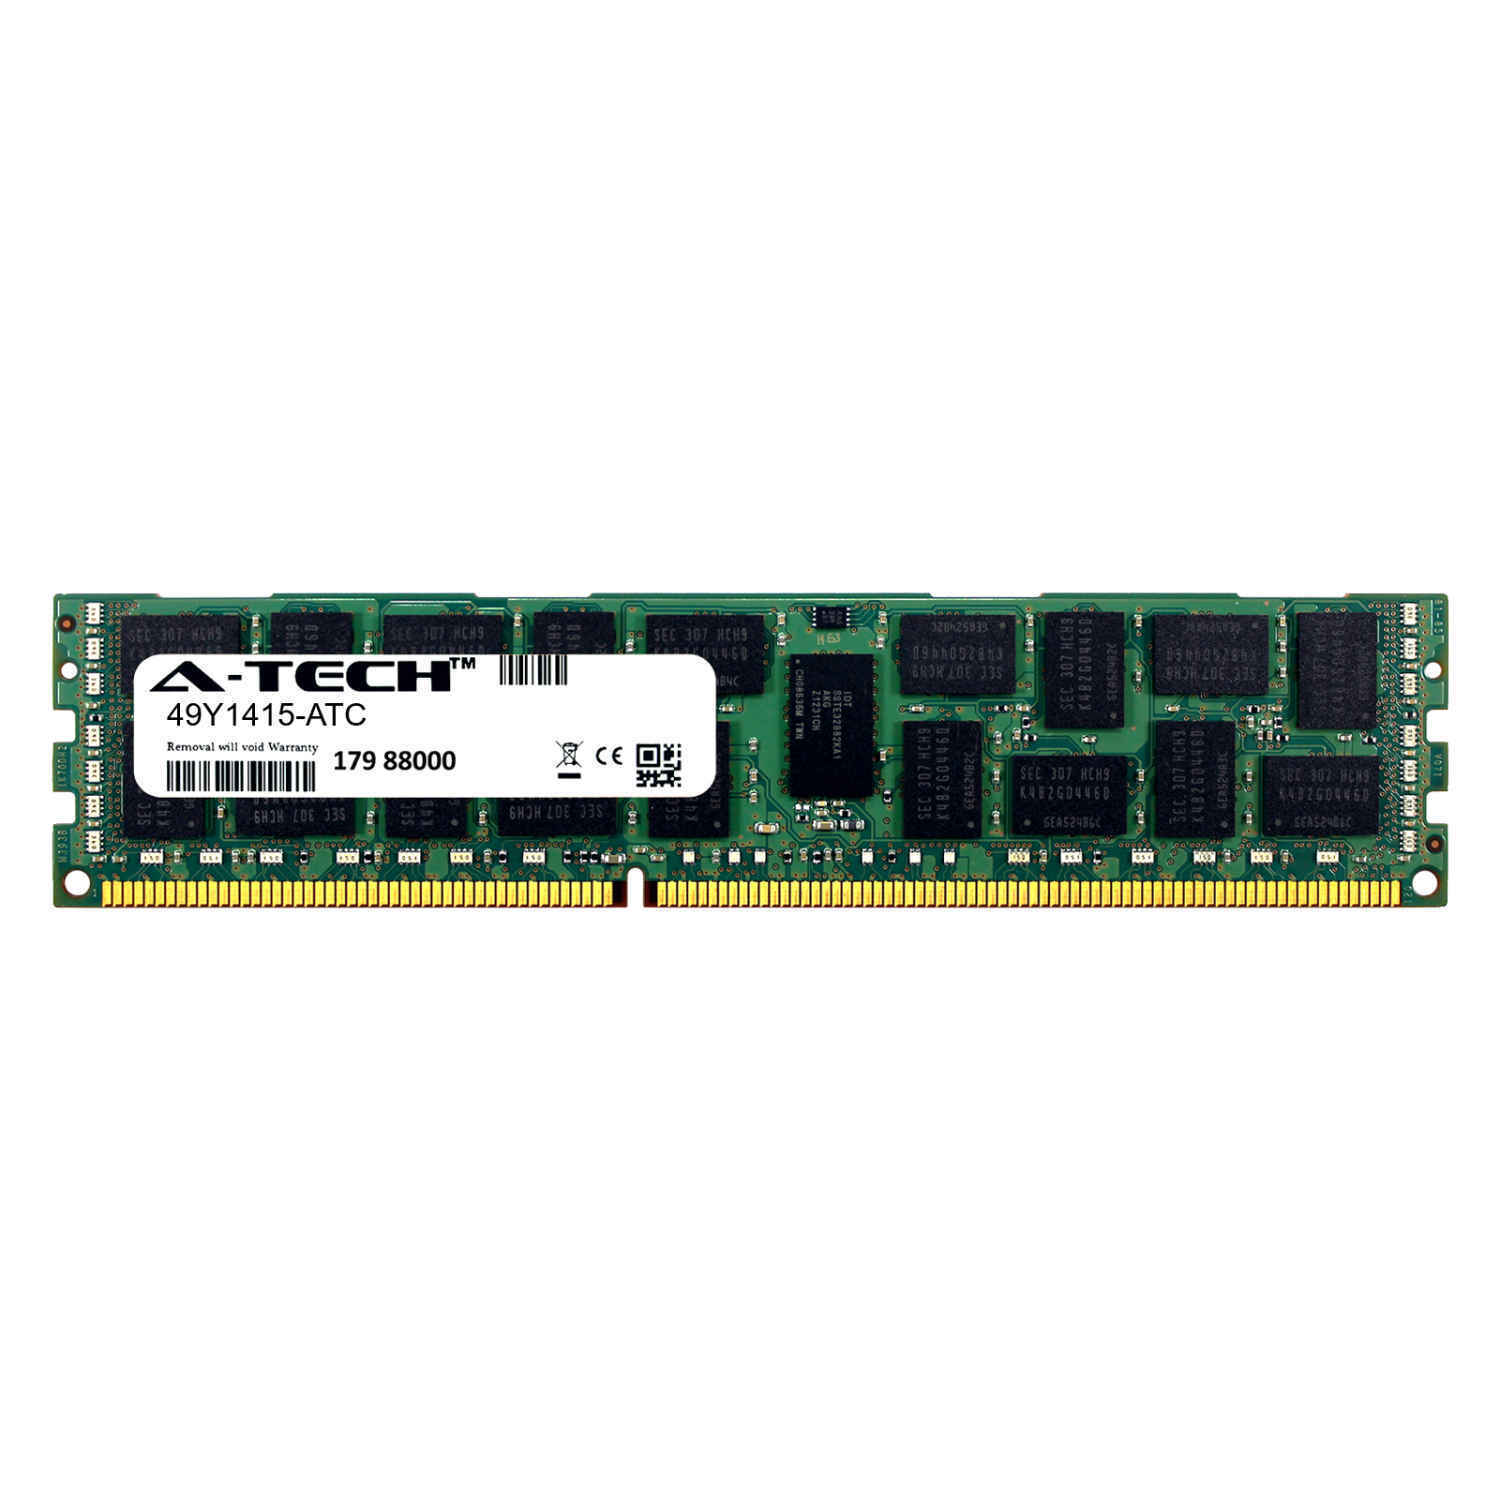 8GB DDR3 PC3-10600R 1333MHz RDIMM (IBM 49Y1415 Equivalent) Server Memory RAM